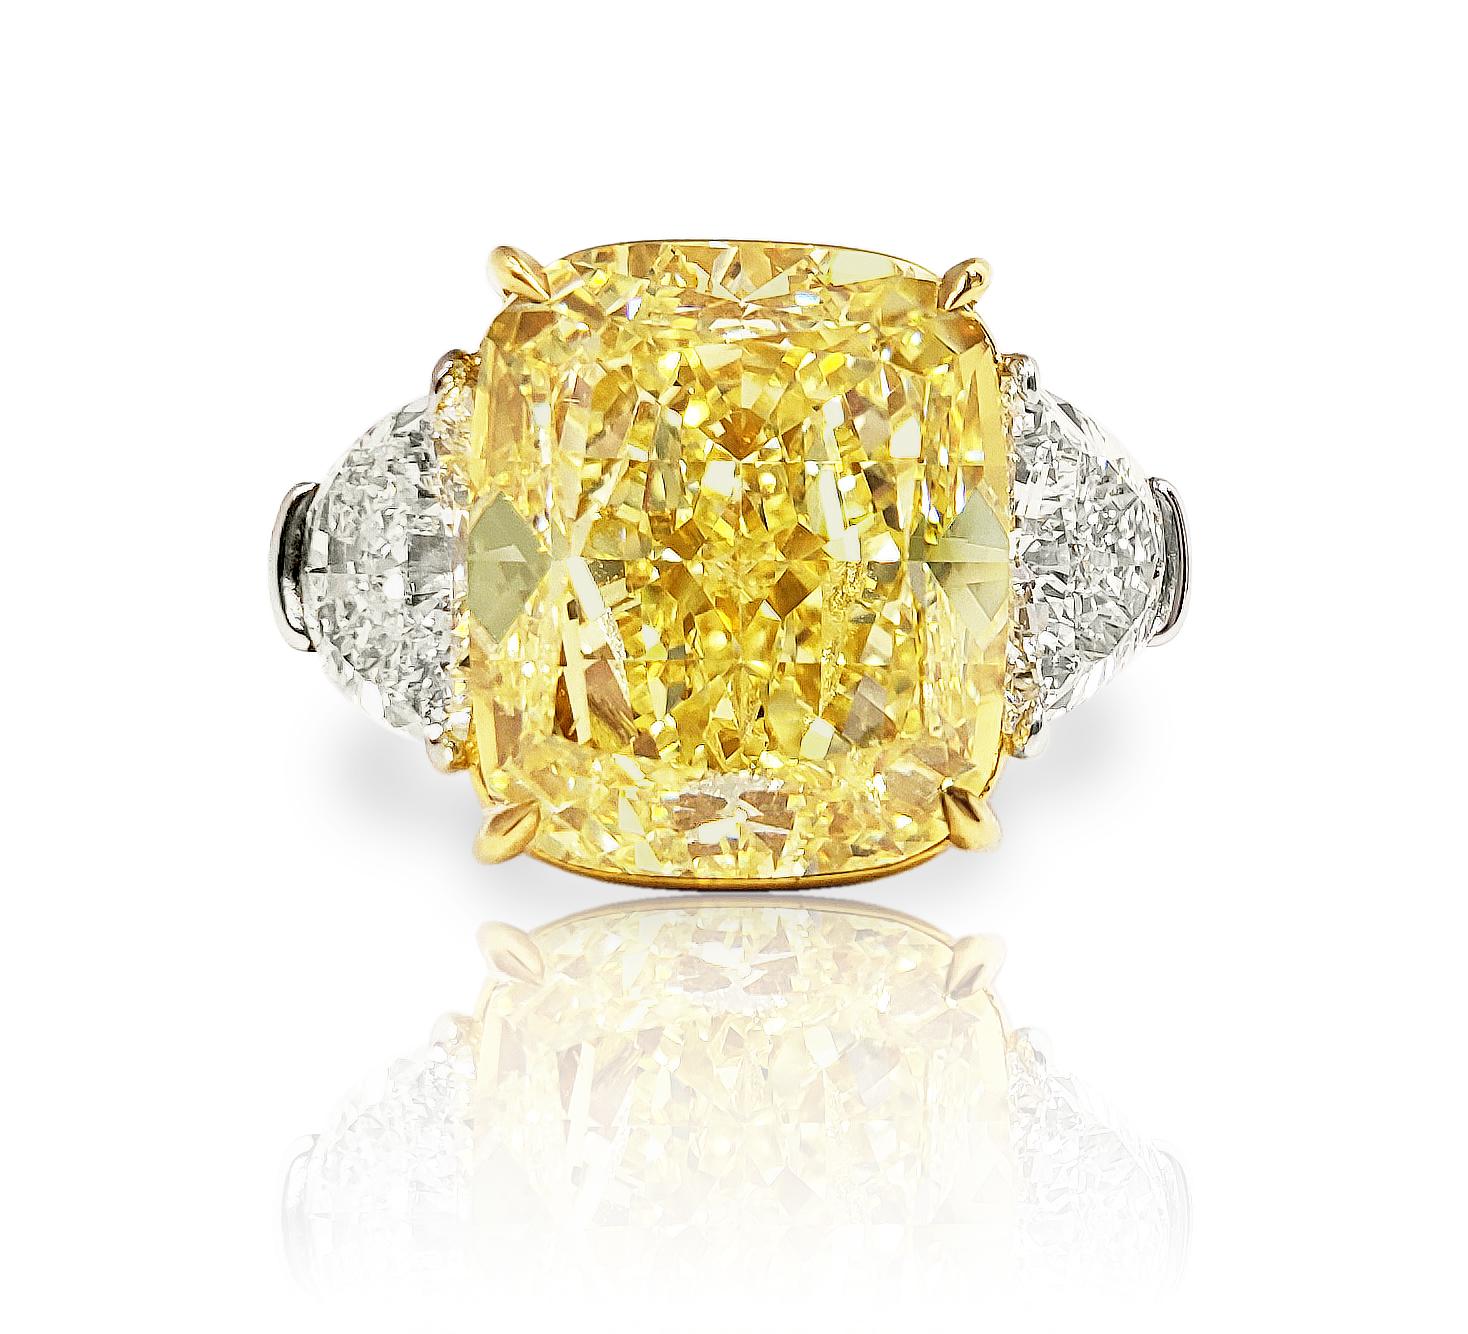 yellow diamond price